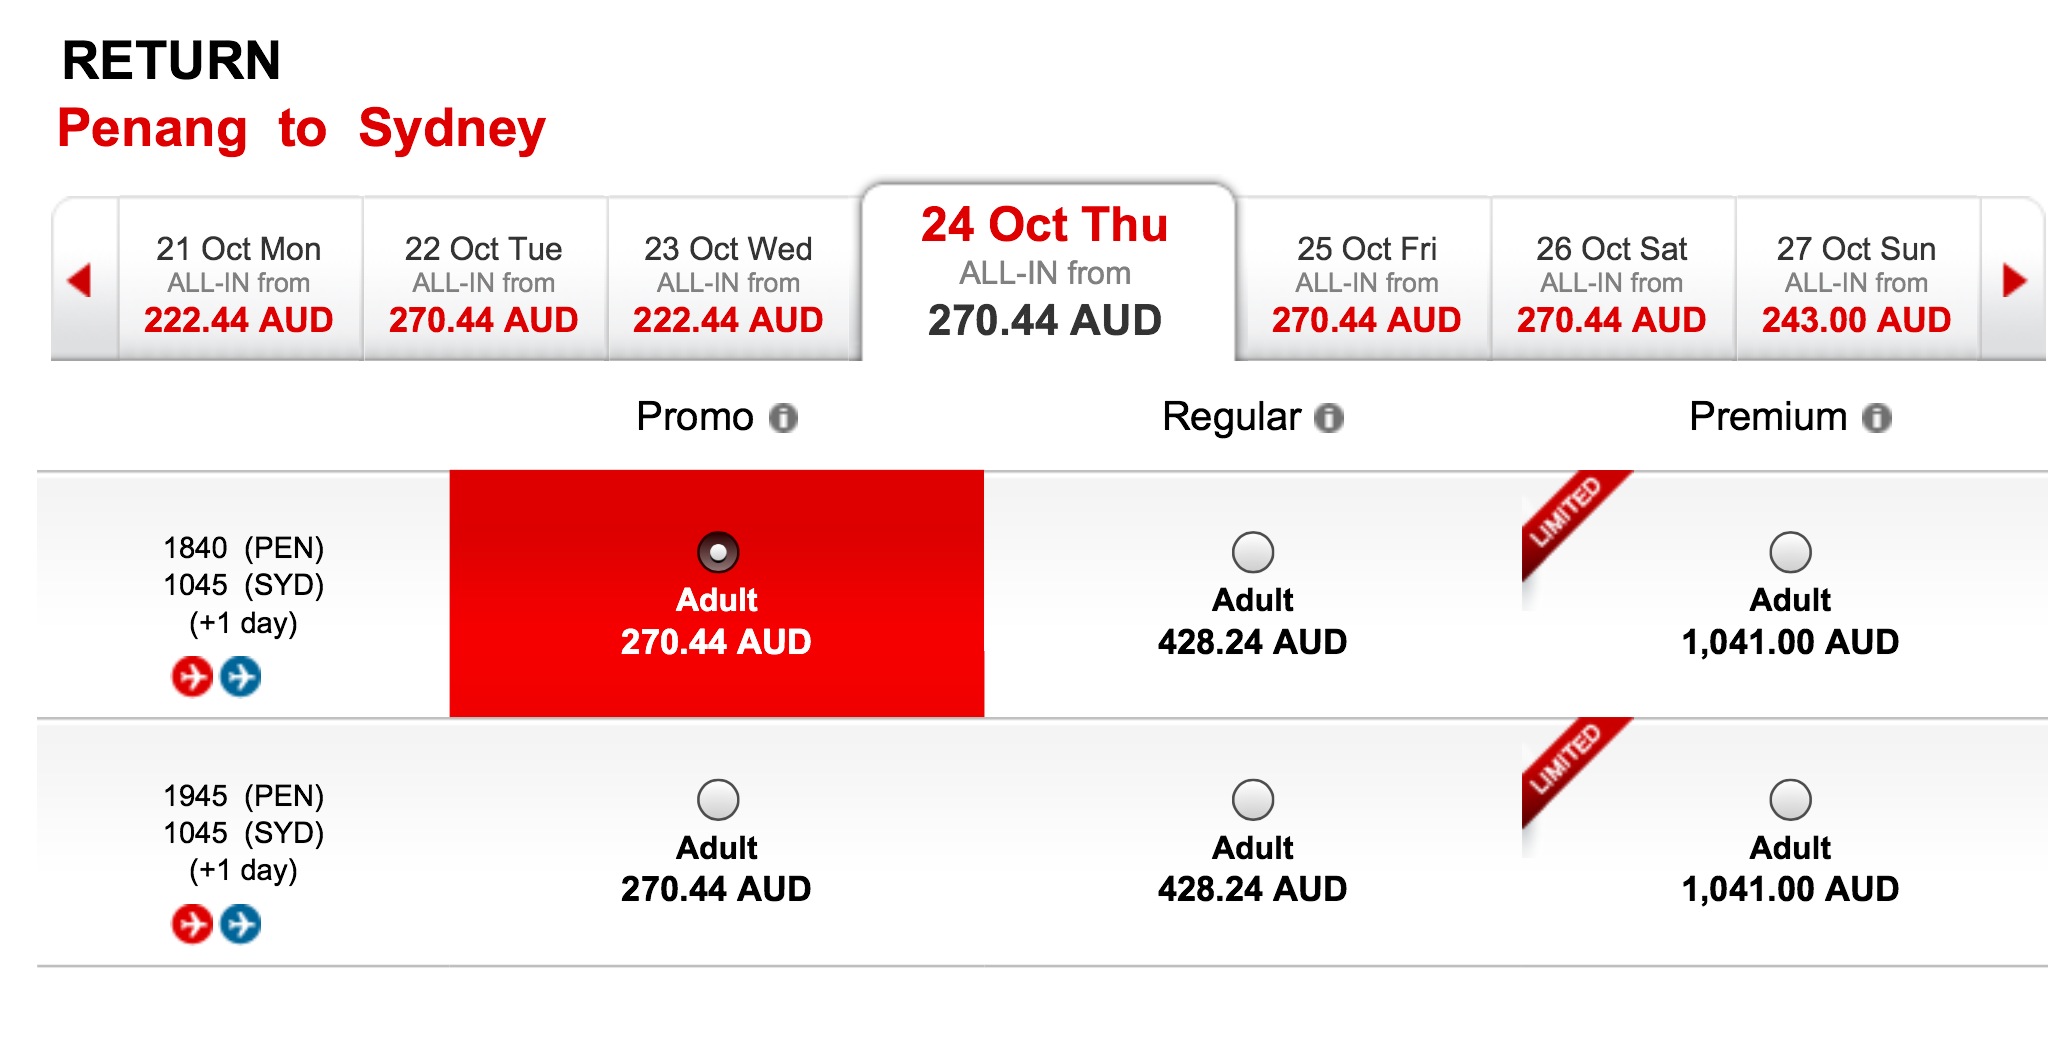 Flight ticket asia air AirAsia Flights: